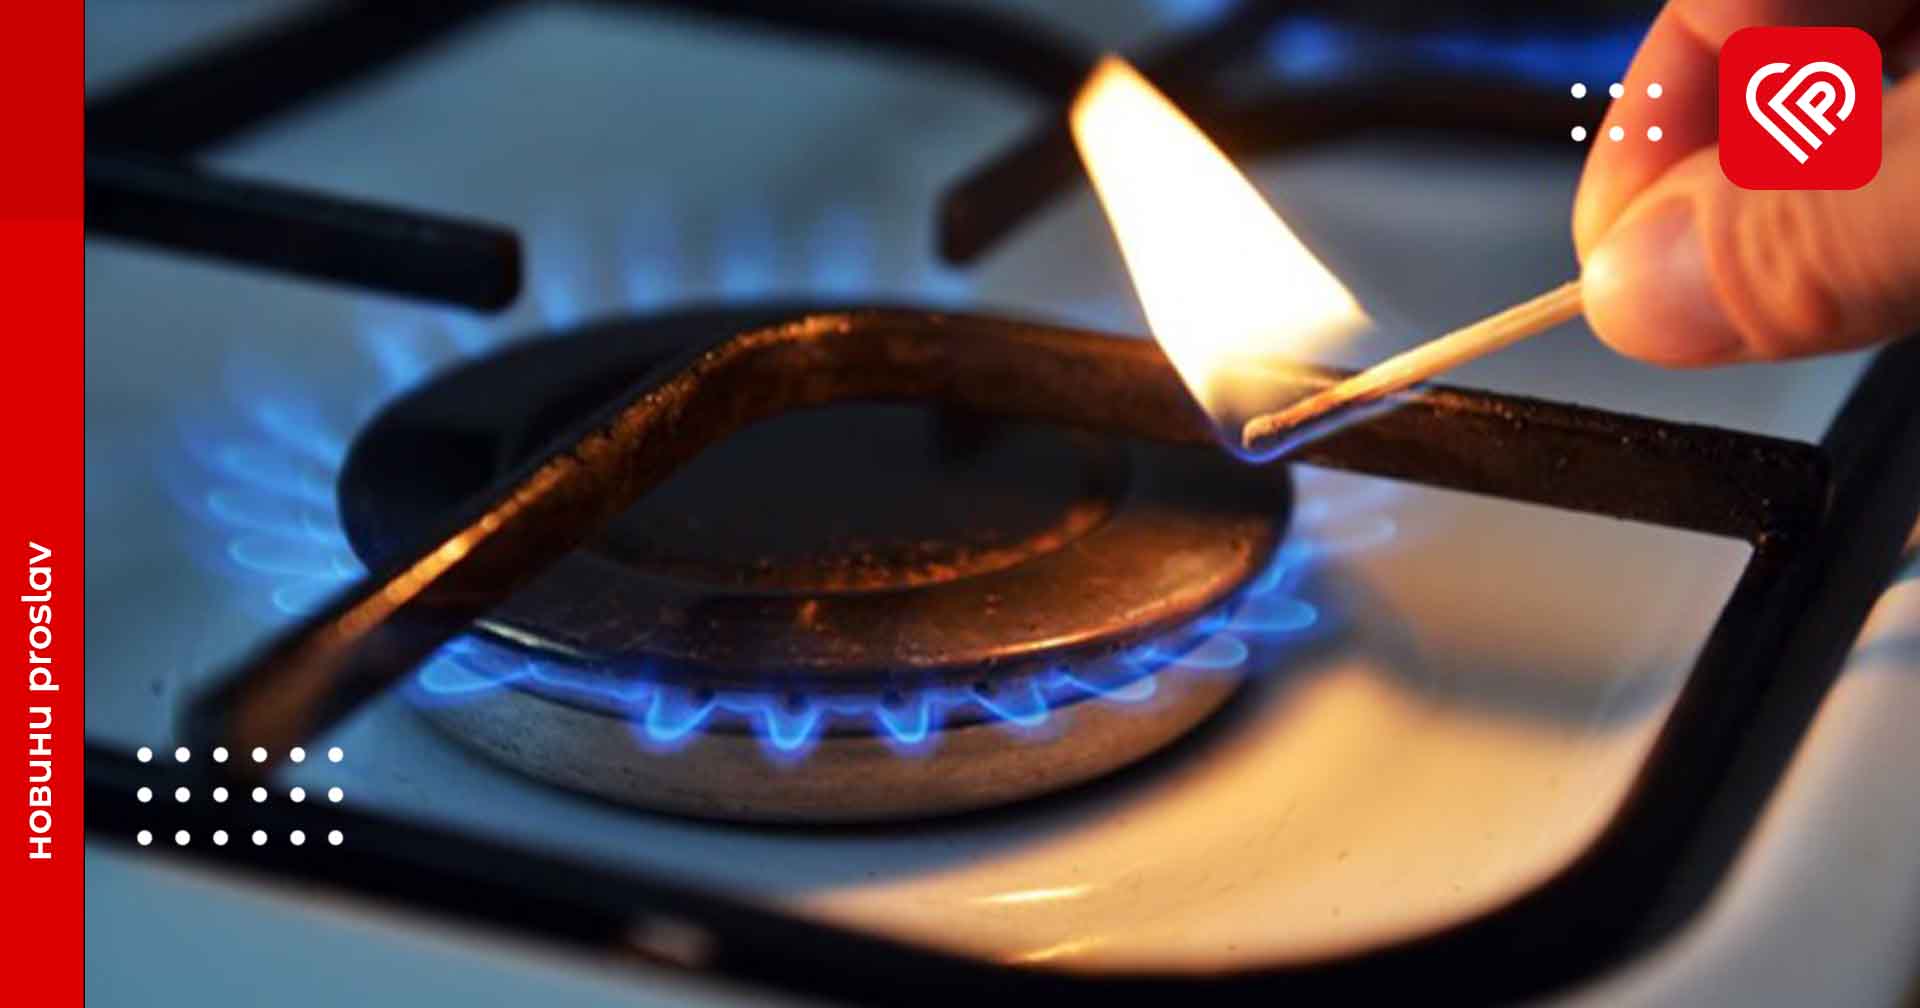 Впродовж березня у Переяславській громаді вимикатимуть подачу природного газу у зв’язку з обслуговуванням систем: перелік адрес